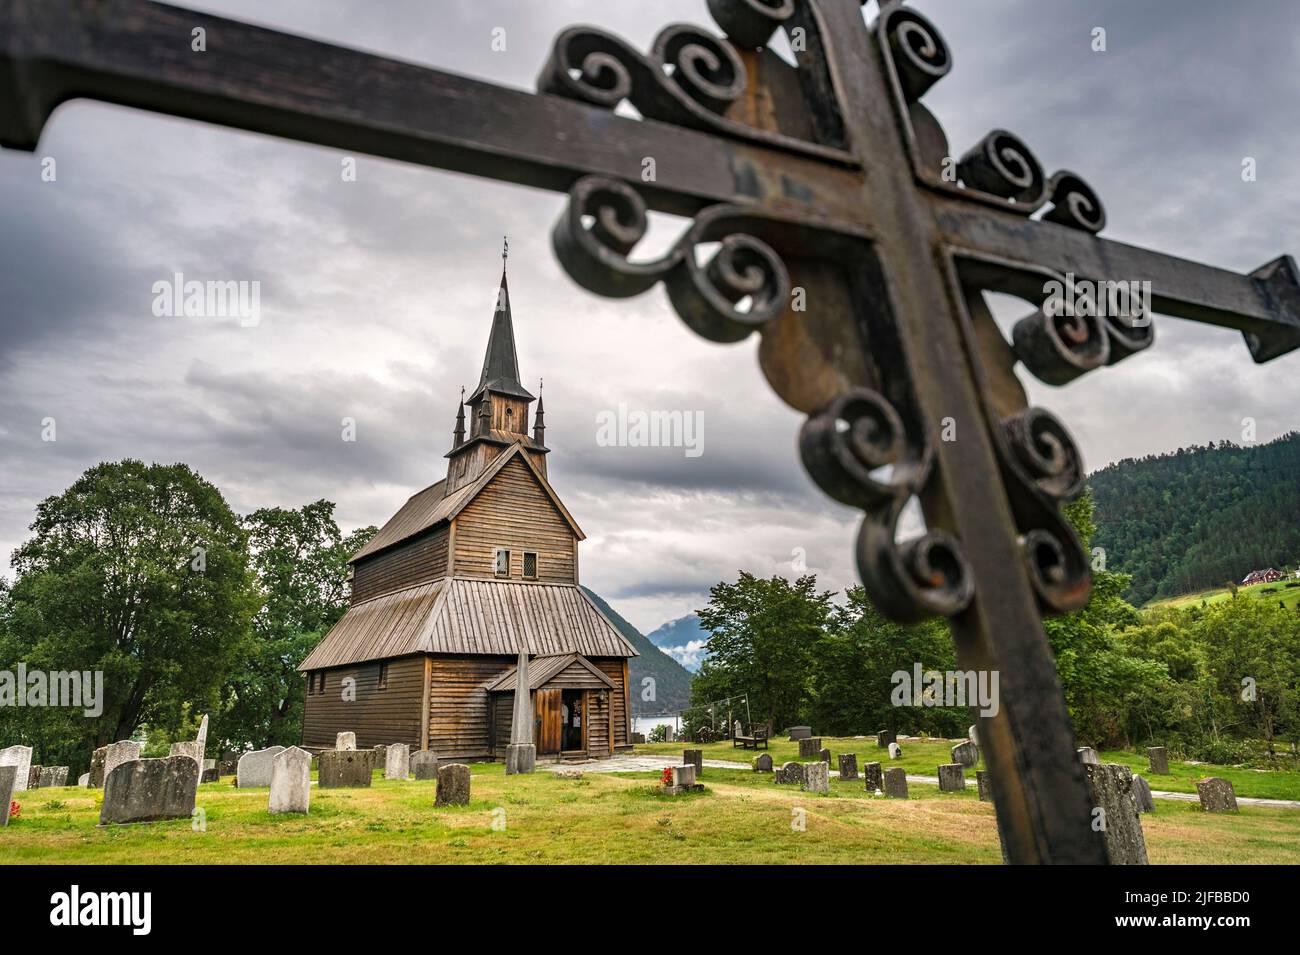 Norvège, Comté de Sogn og Fjordane, Laerdal, église de la rive (stavkyrjke) Banque D'Images